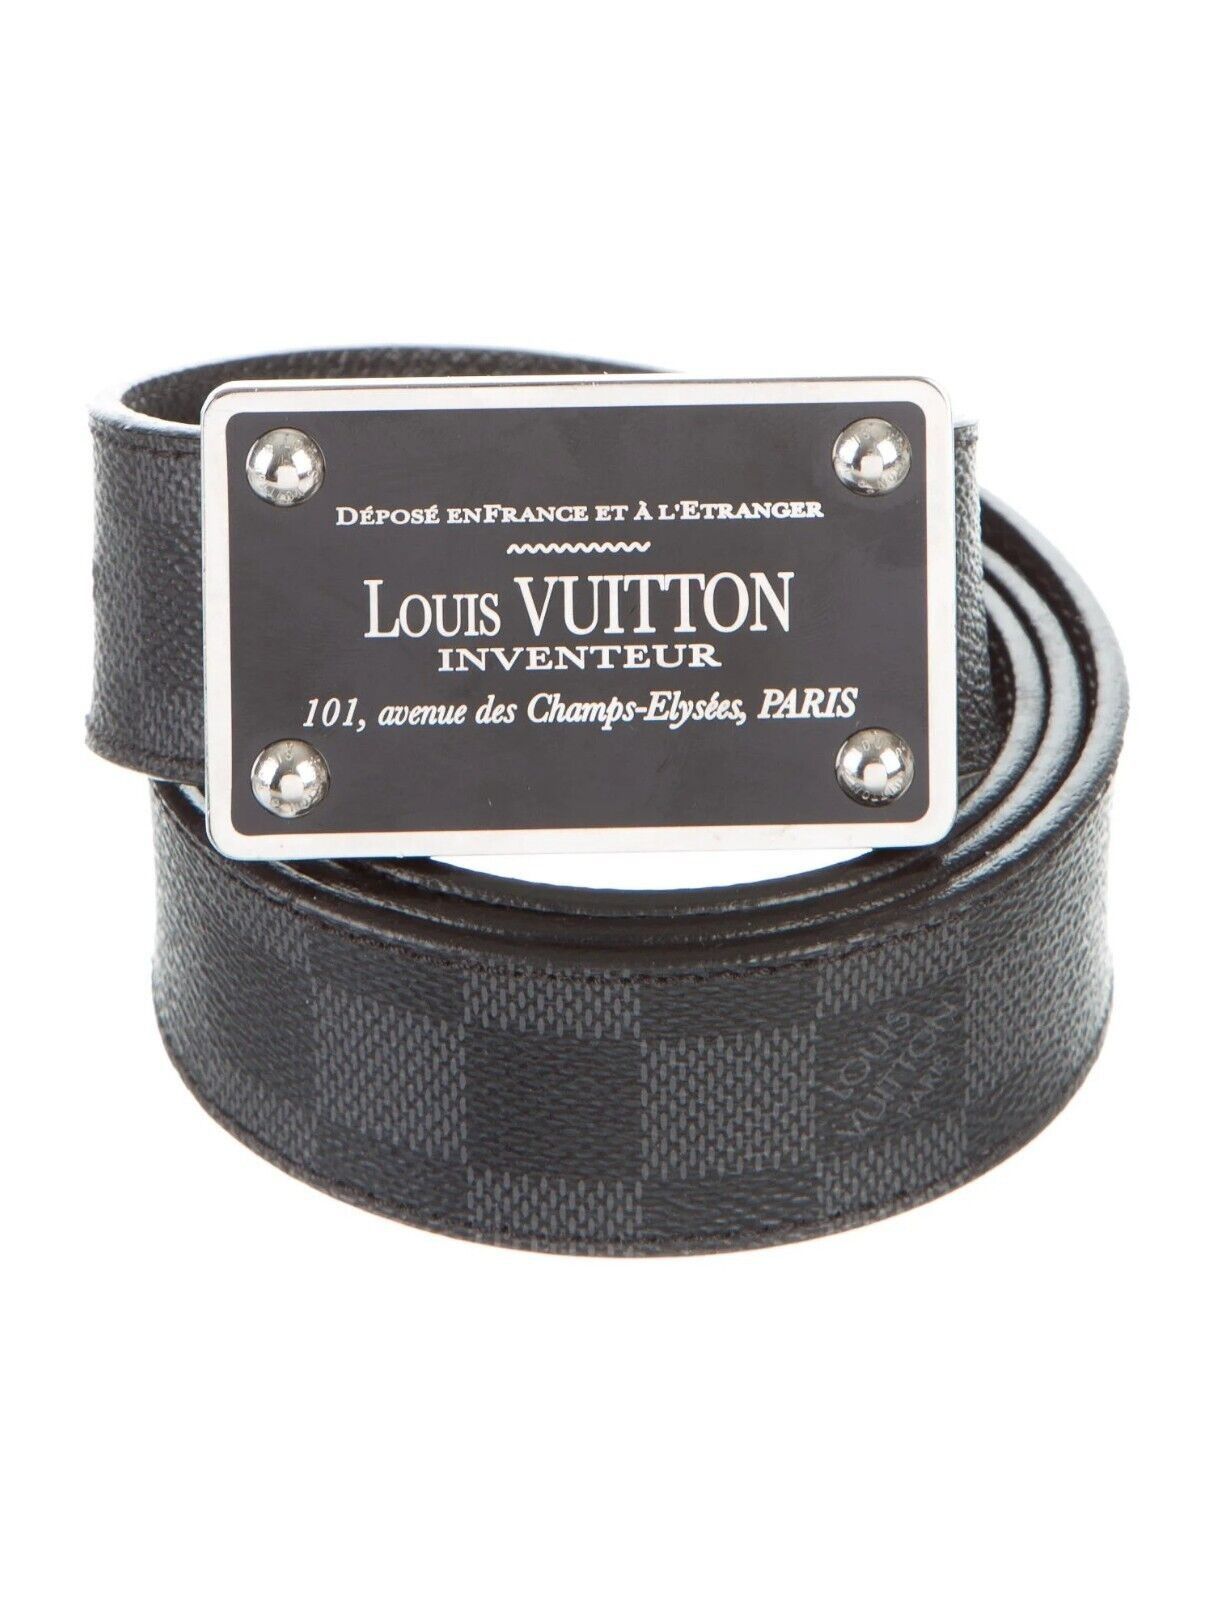 Louis Vuitton Damier Ebene Inventeur Belt - Size 34 / 85, Louis Vuitton  Accessories